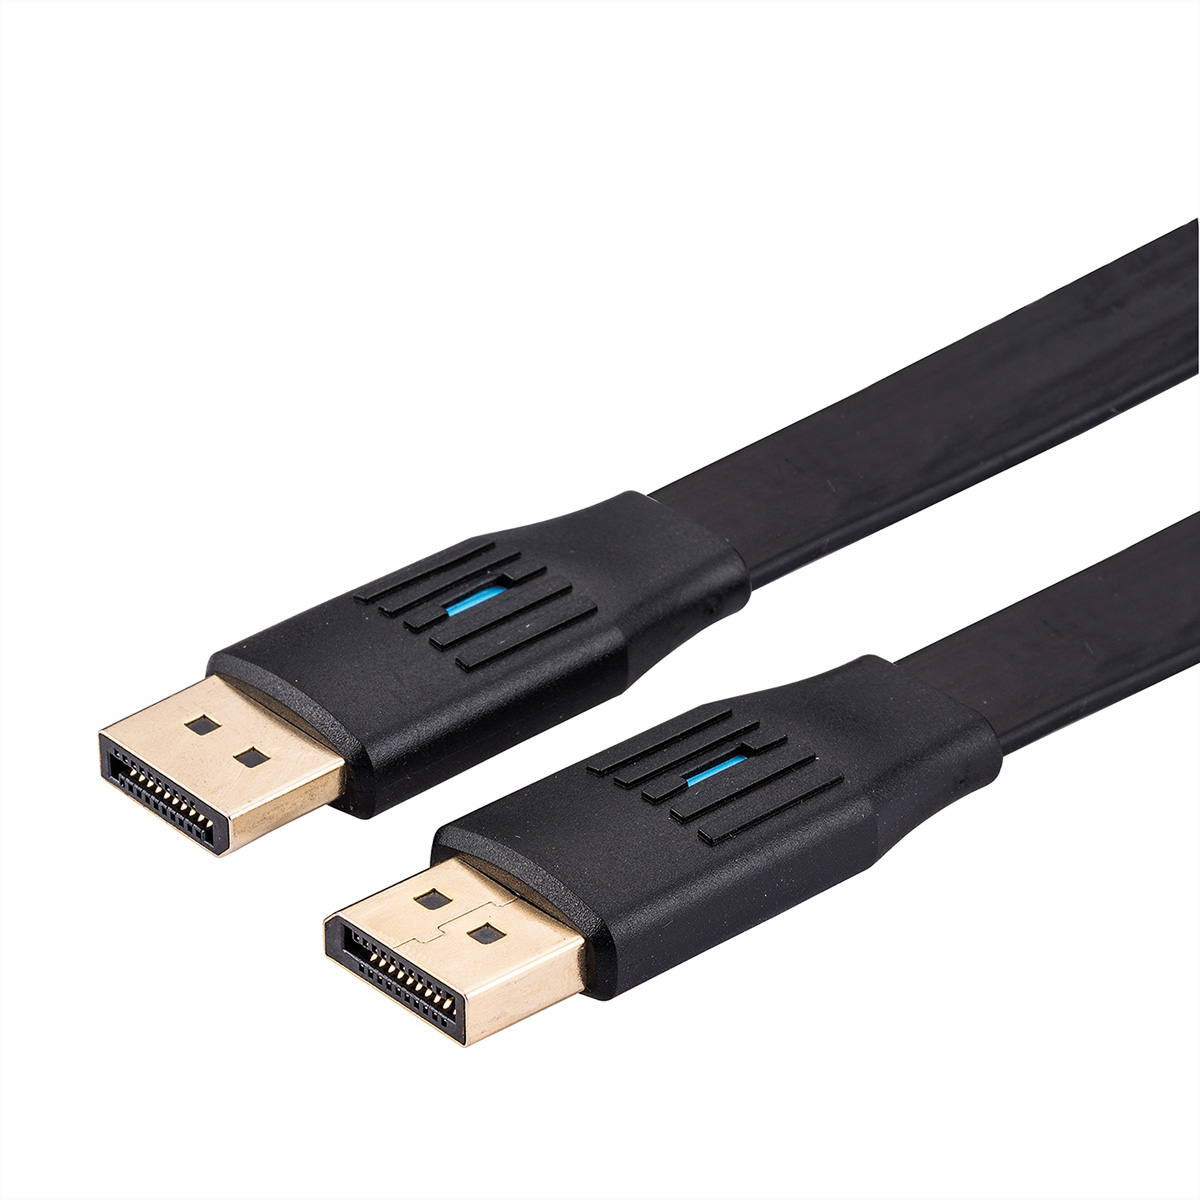 Kabel, m 1 VALUE v1.4, DisplayPort-Kabel, DisplayPort